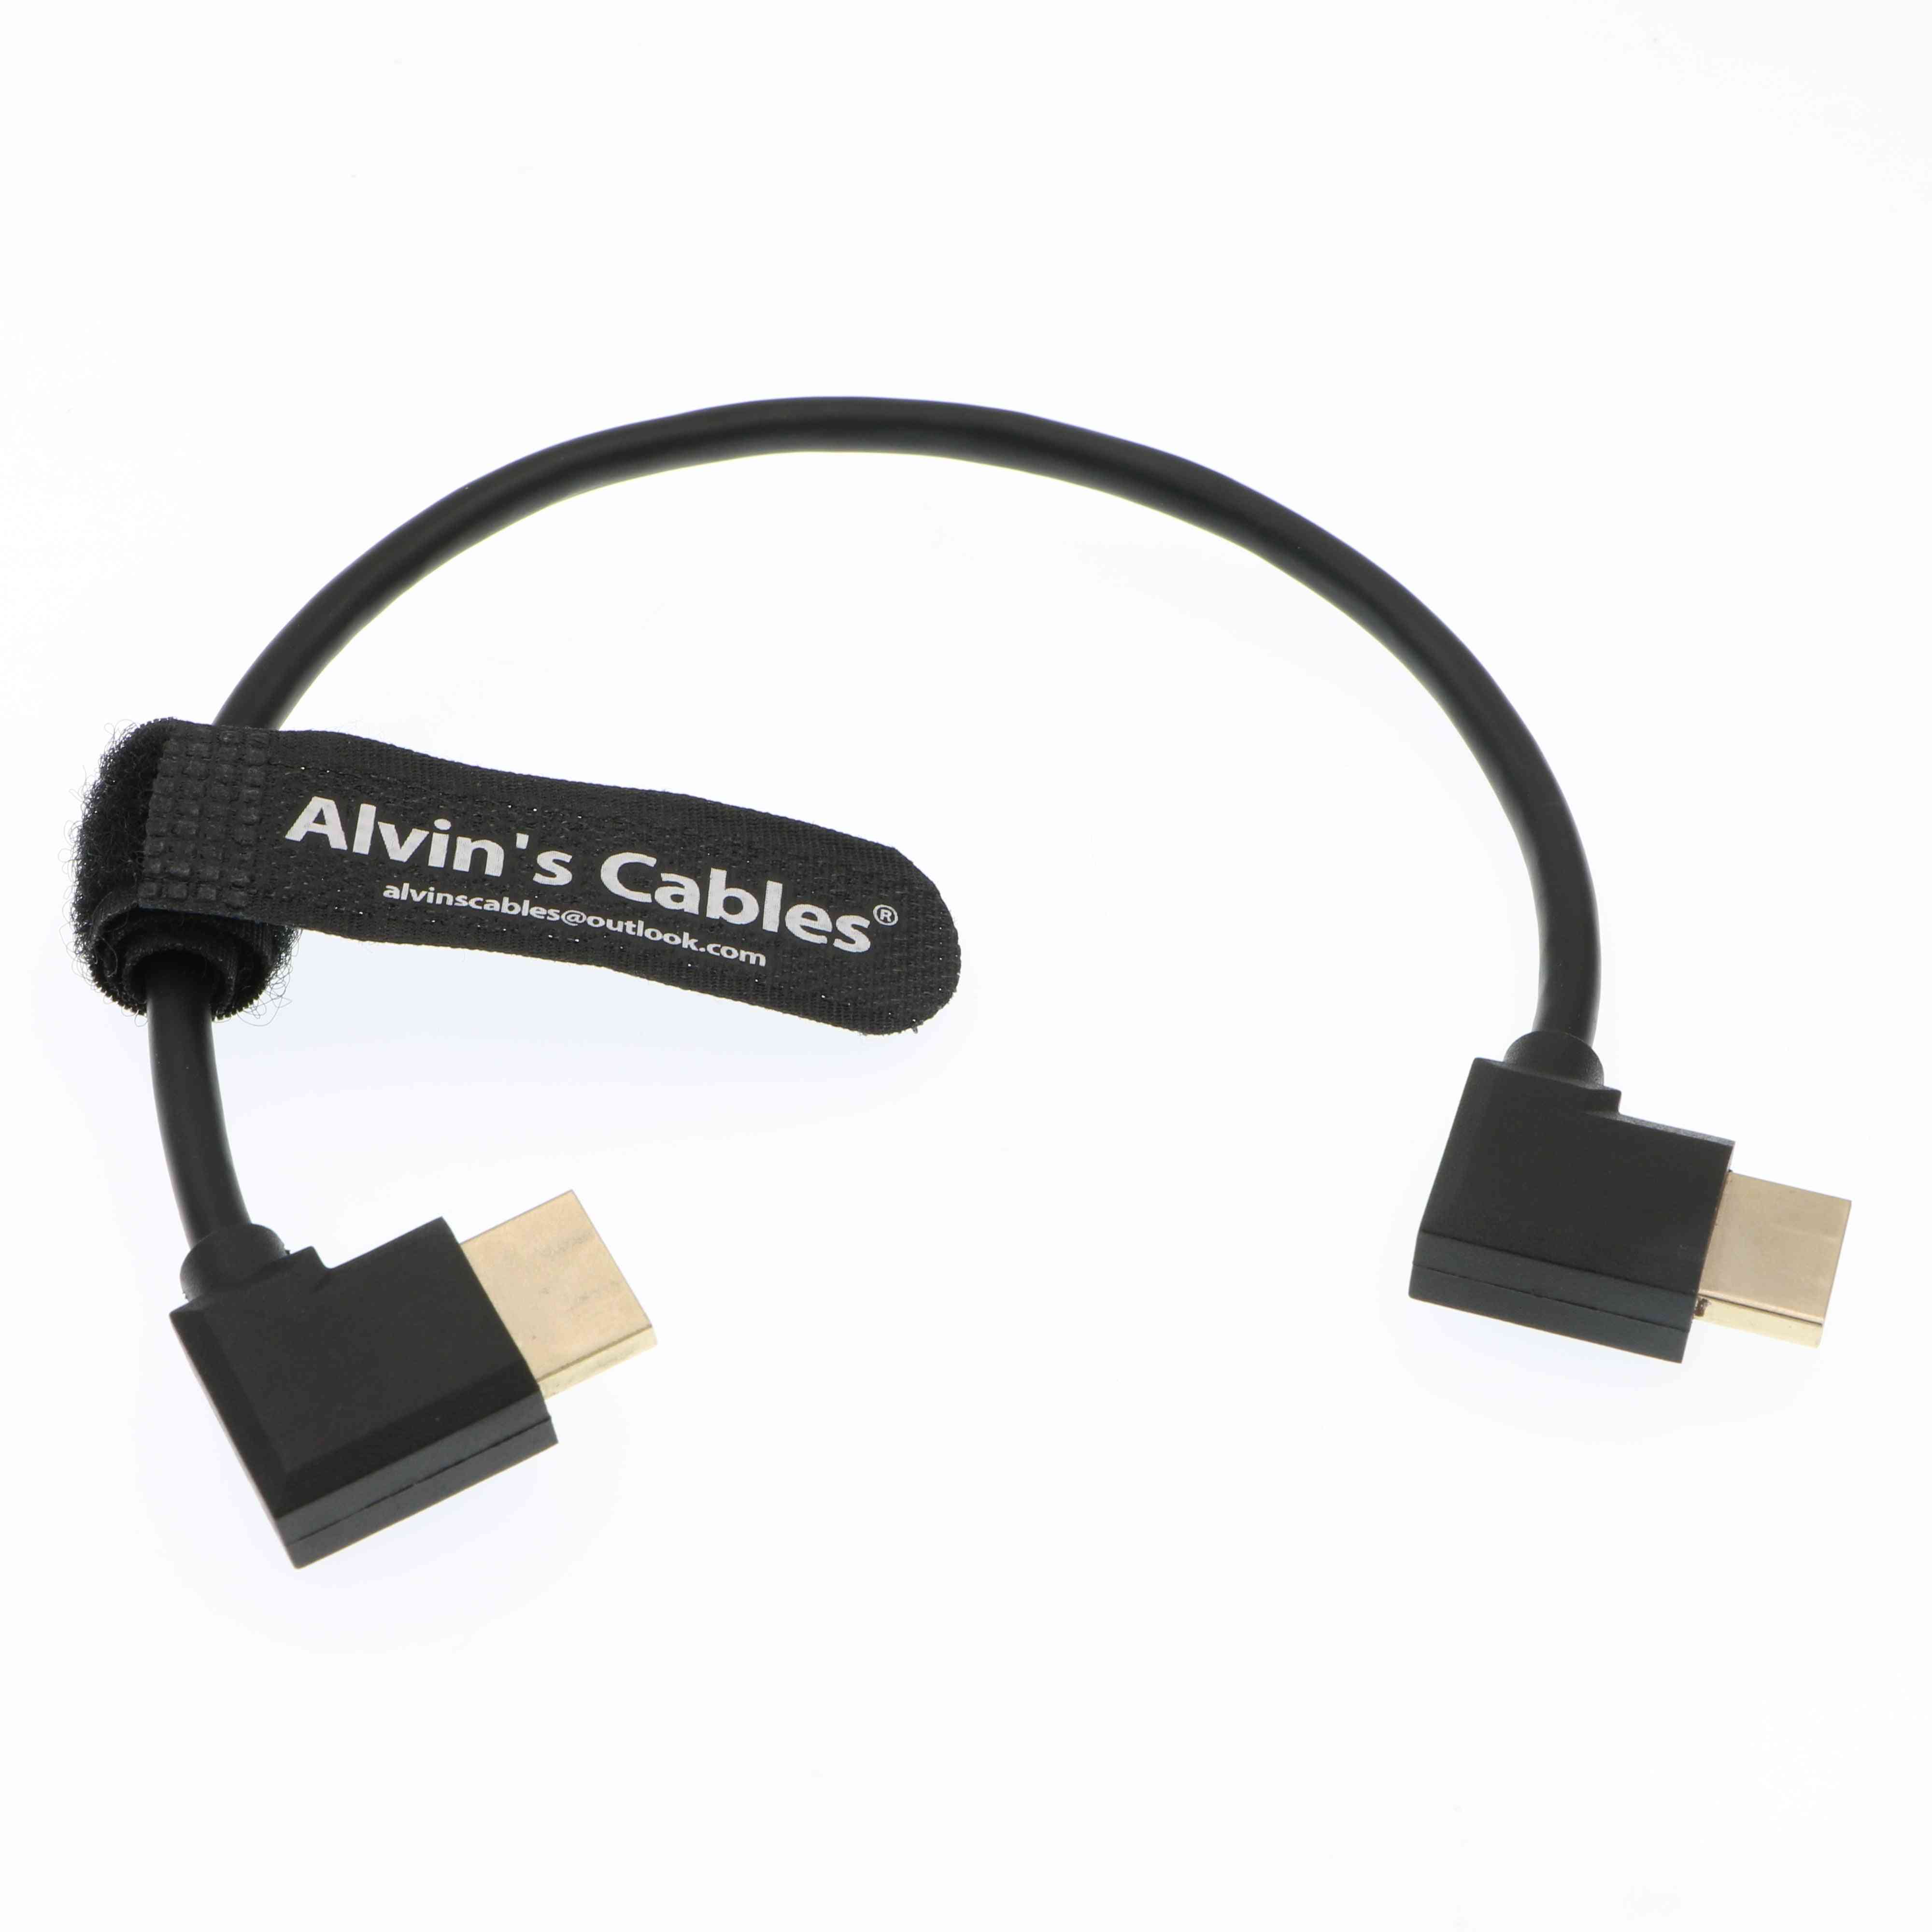 Alvin's kabler z cam e2 l form hdmi kabel retvinklet højhastigheds hdmi ledning til portkeys bm5 skærm - 30 cm